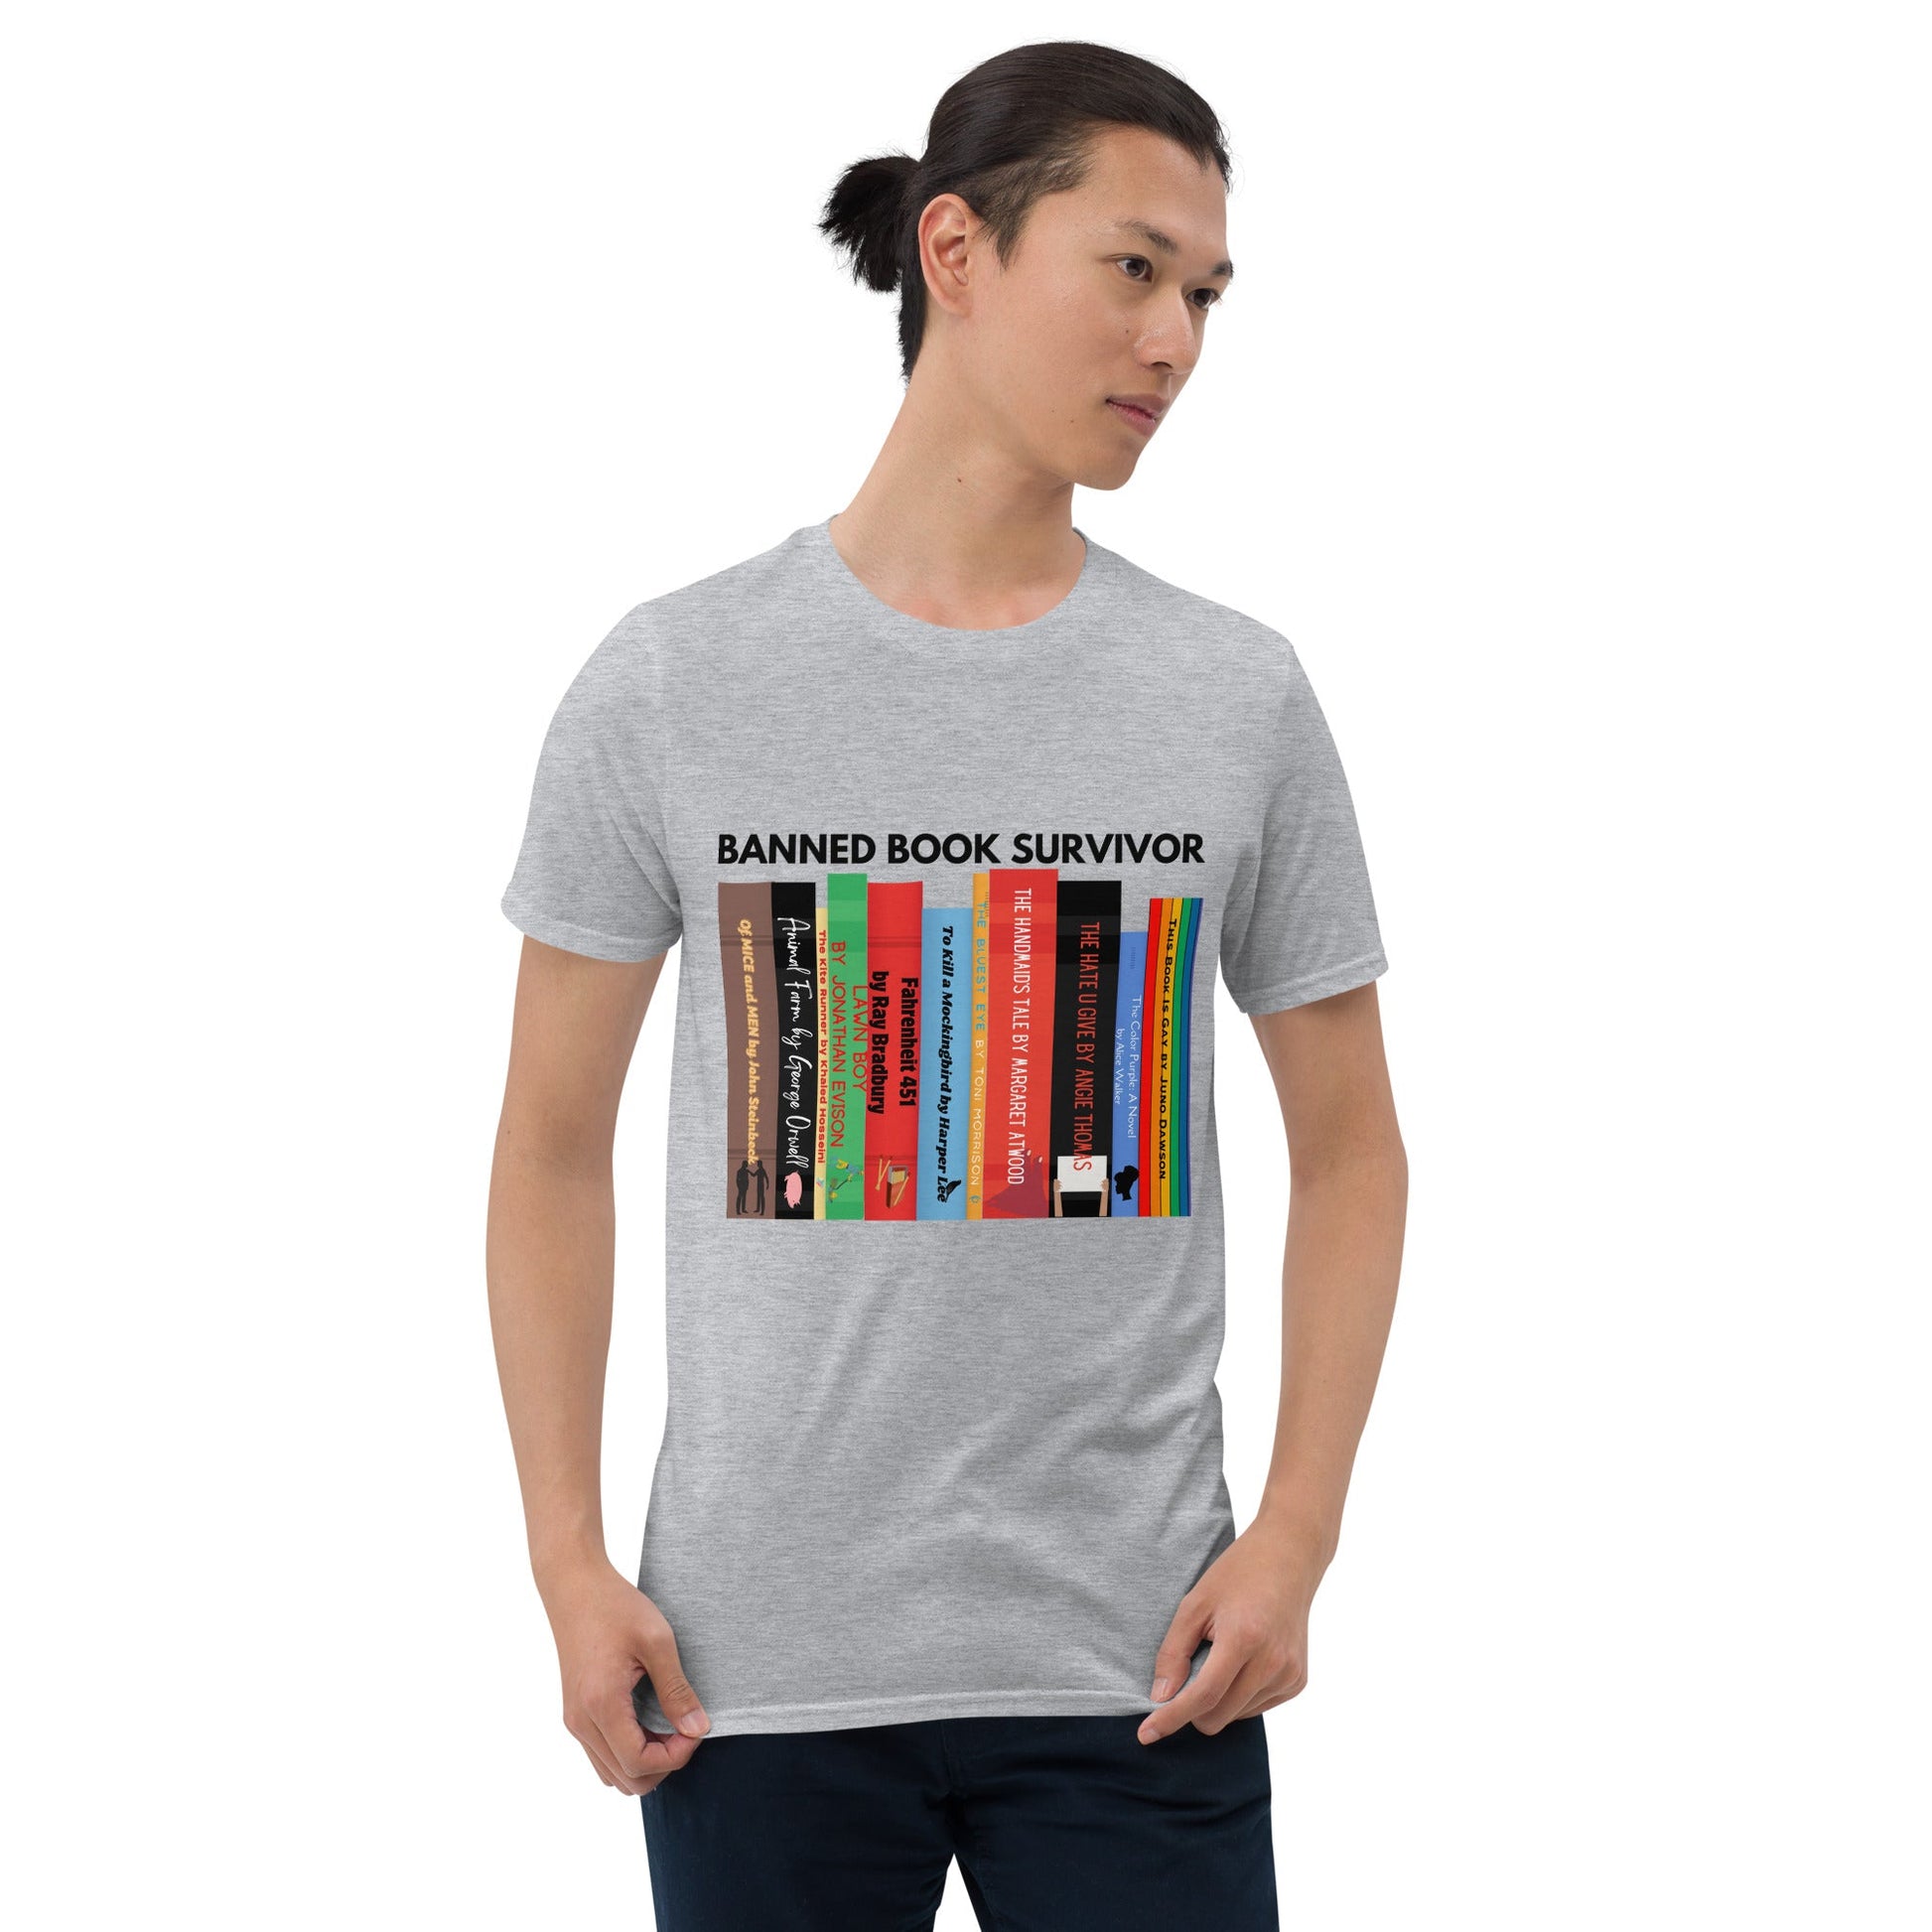 Banned Book Survivor T-Shirt - Kindle Crack